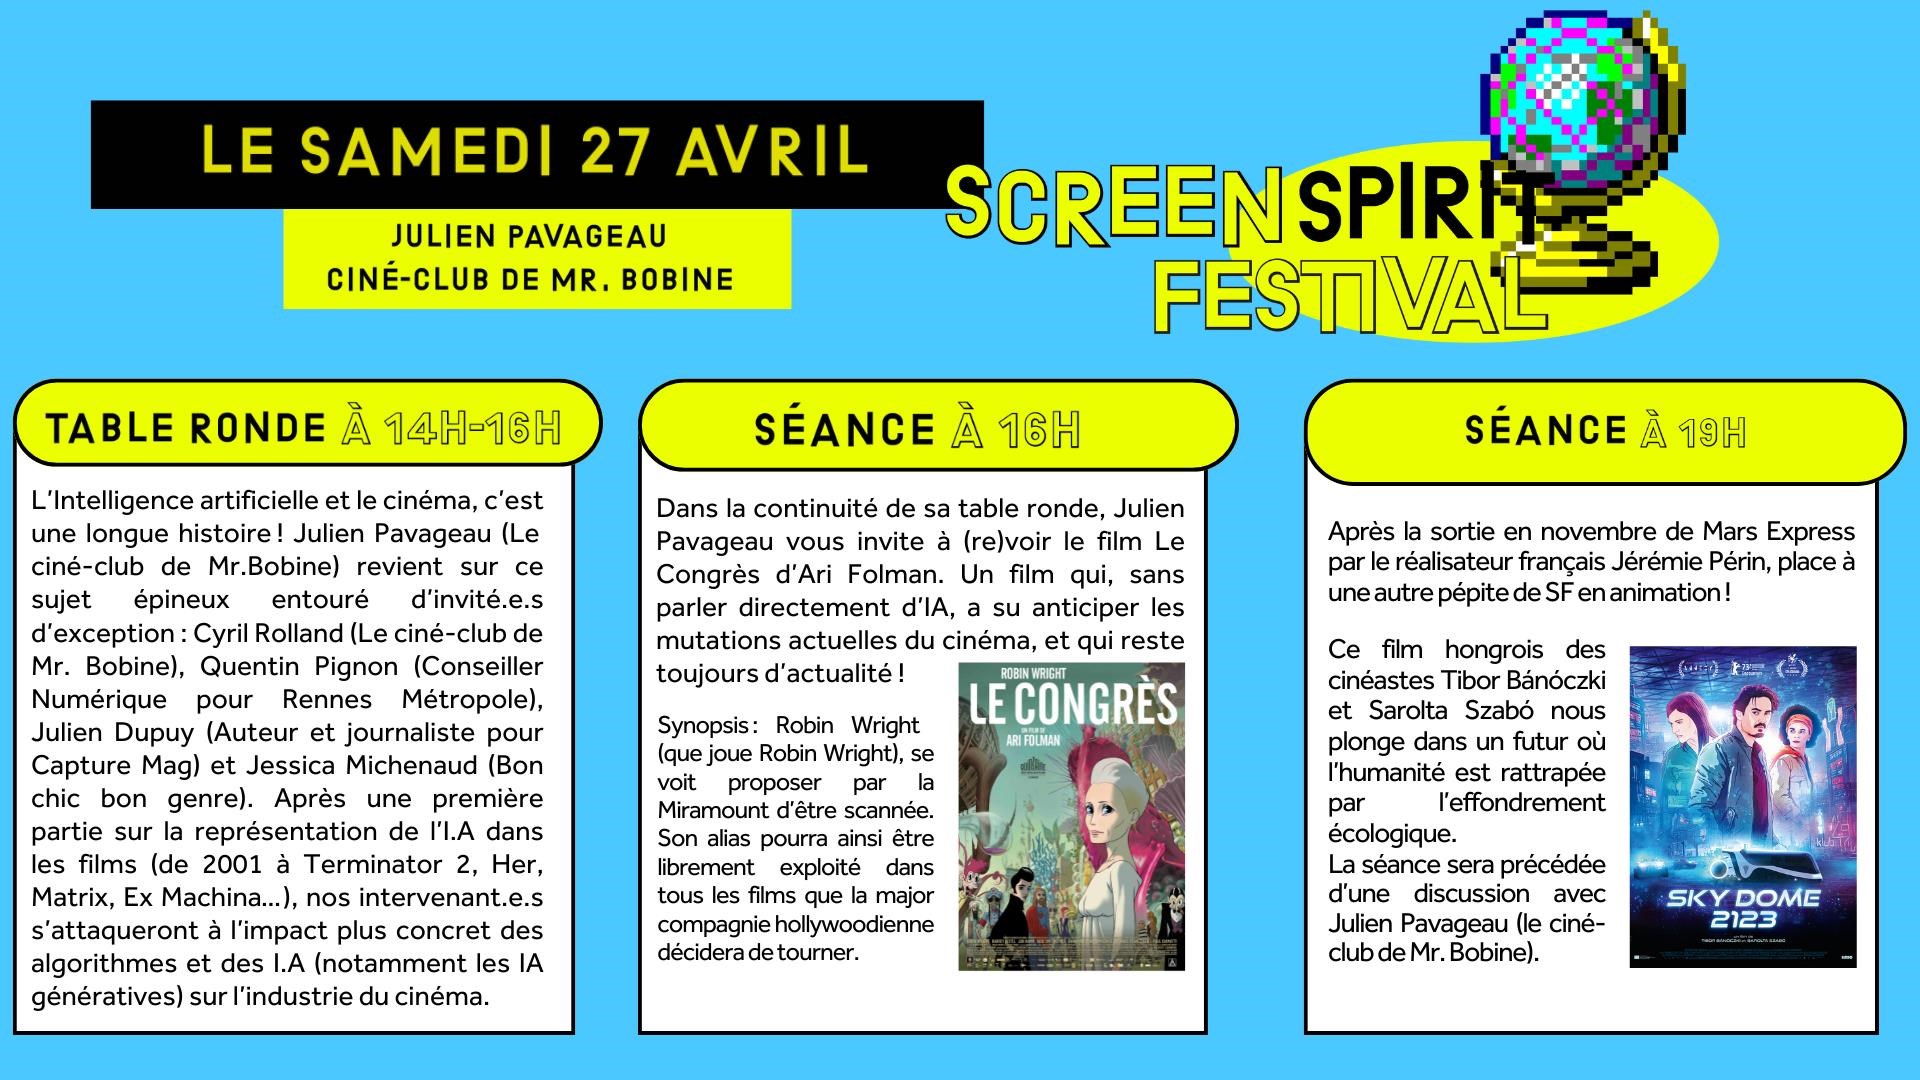 Programme de la journée du 27 avril © Cinéma Le Concorde Nantes